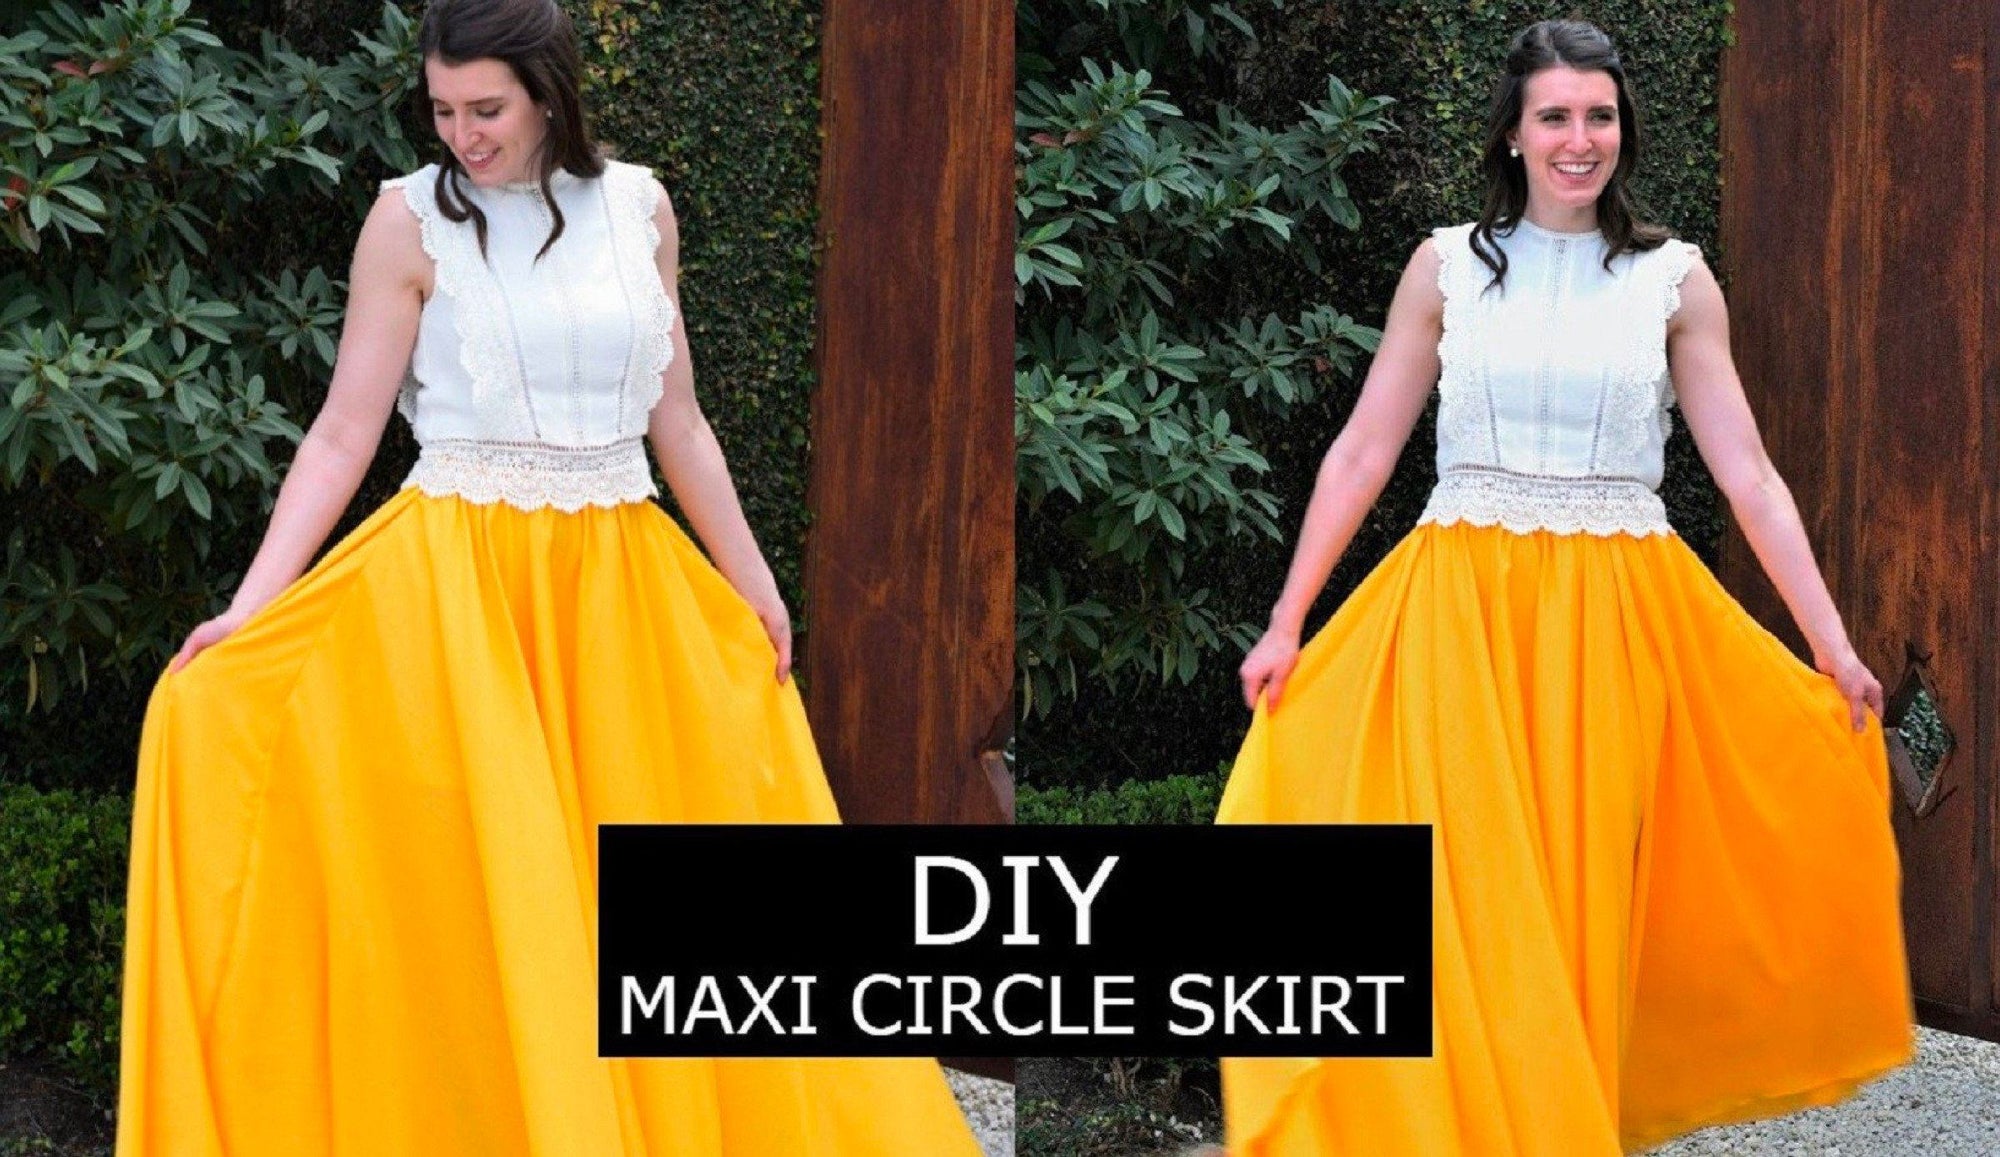 DIY Chiffon Maxi Circle Skirt Sewing Tutorial